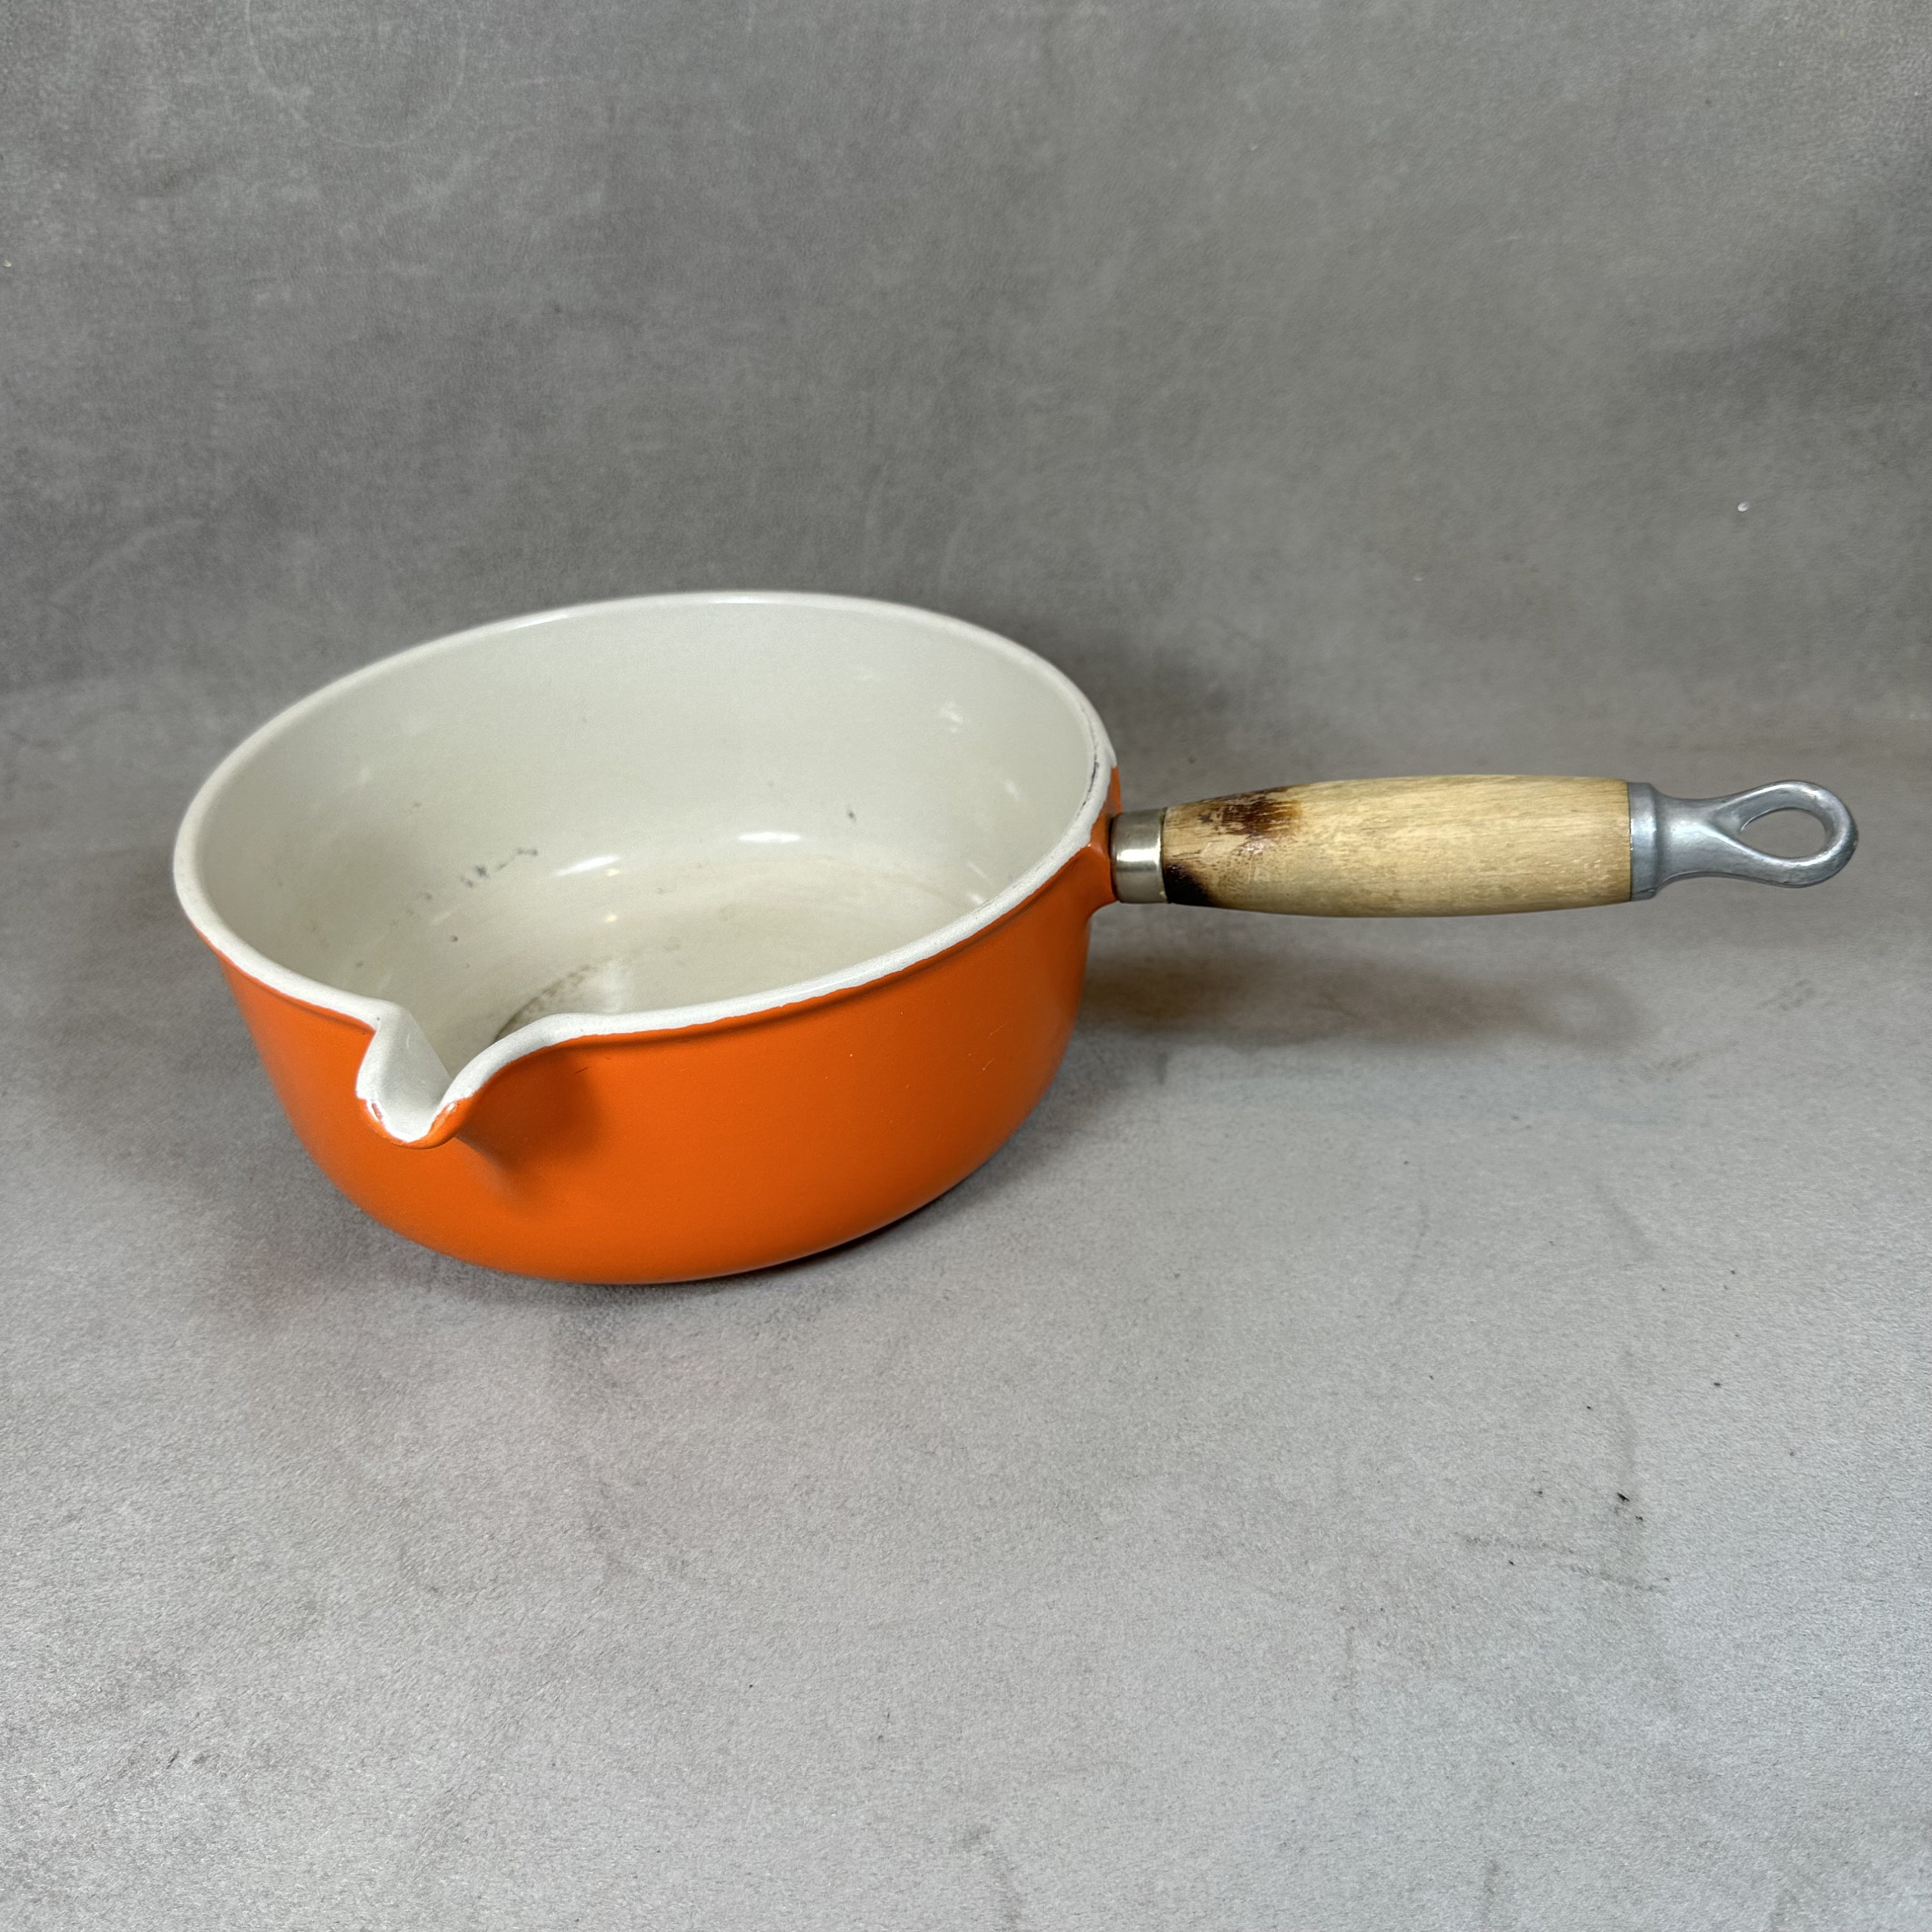 Le Creuset Flame Orange #18 Sauce Pan Wood Handle Cast Iron Pour Spout  Vintage